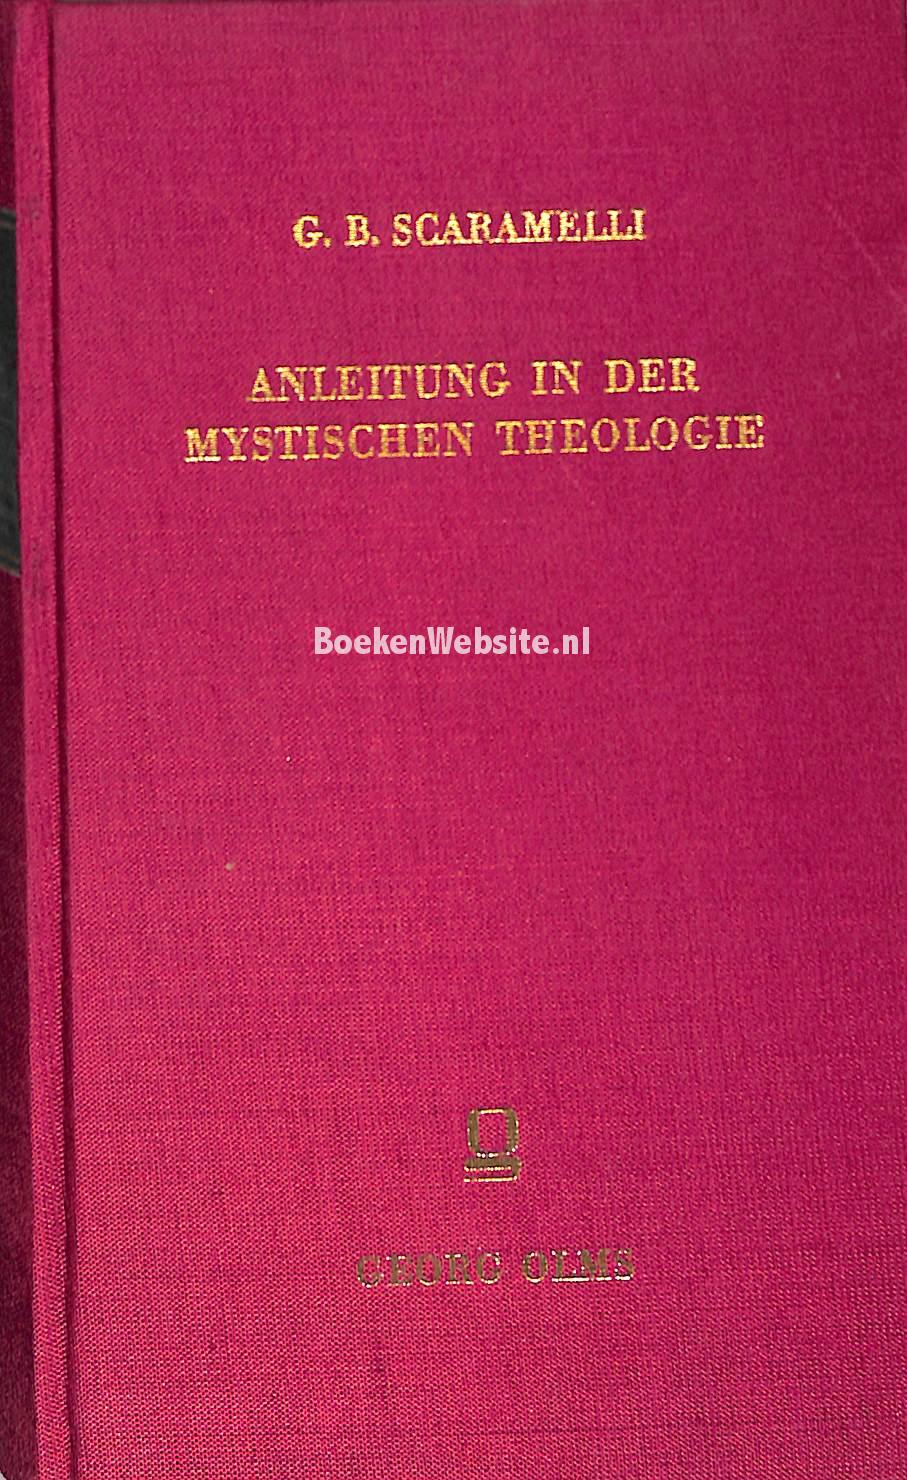 Anleitung in der mystischen Theologie